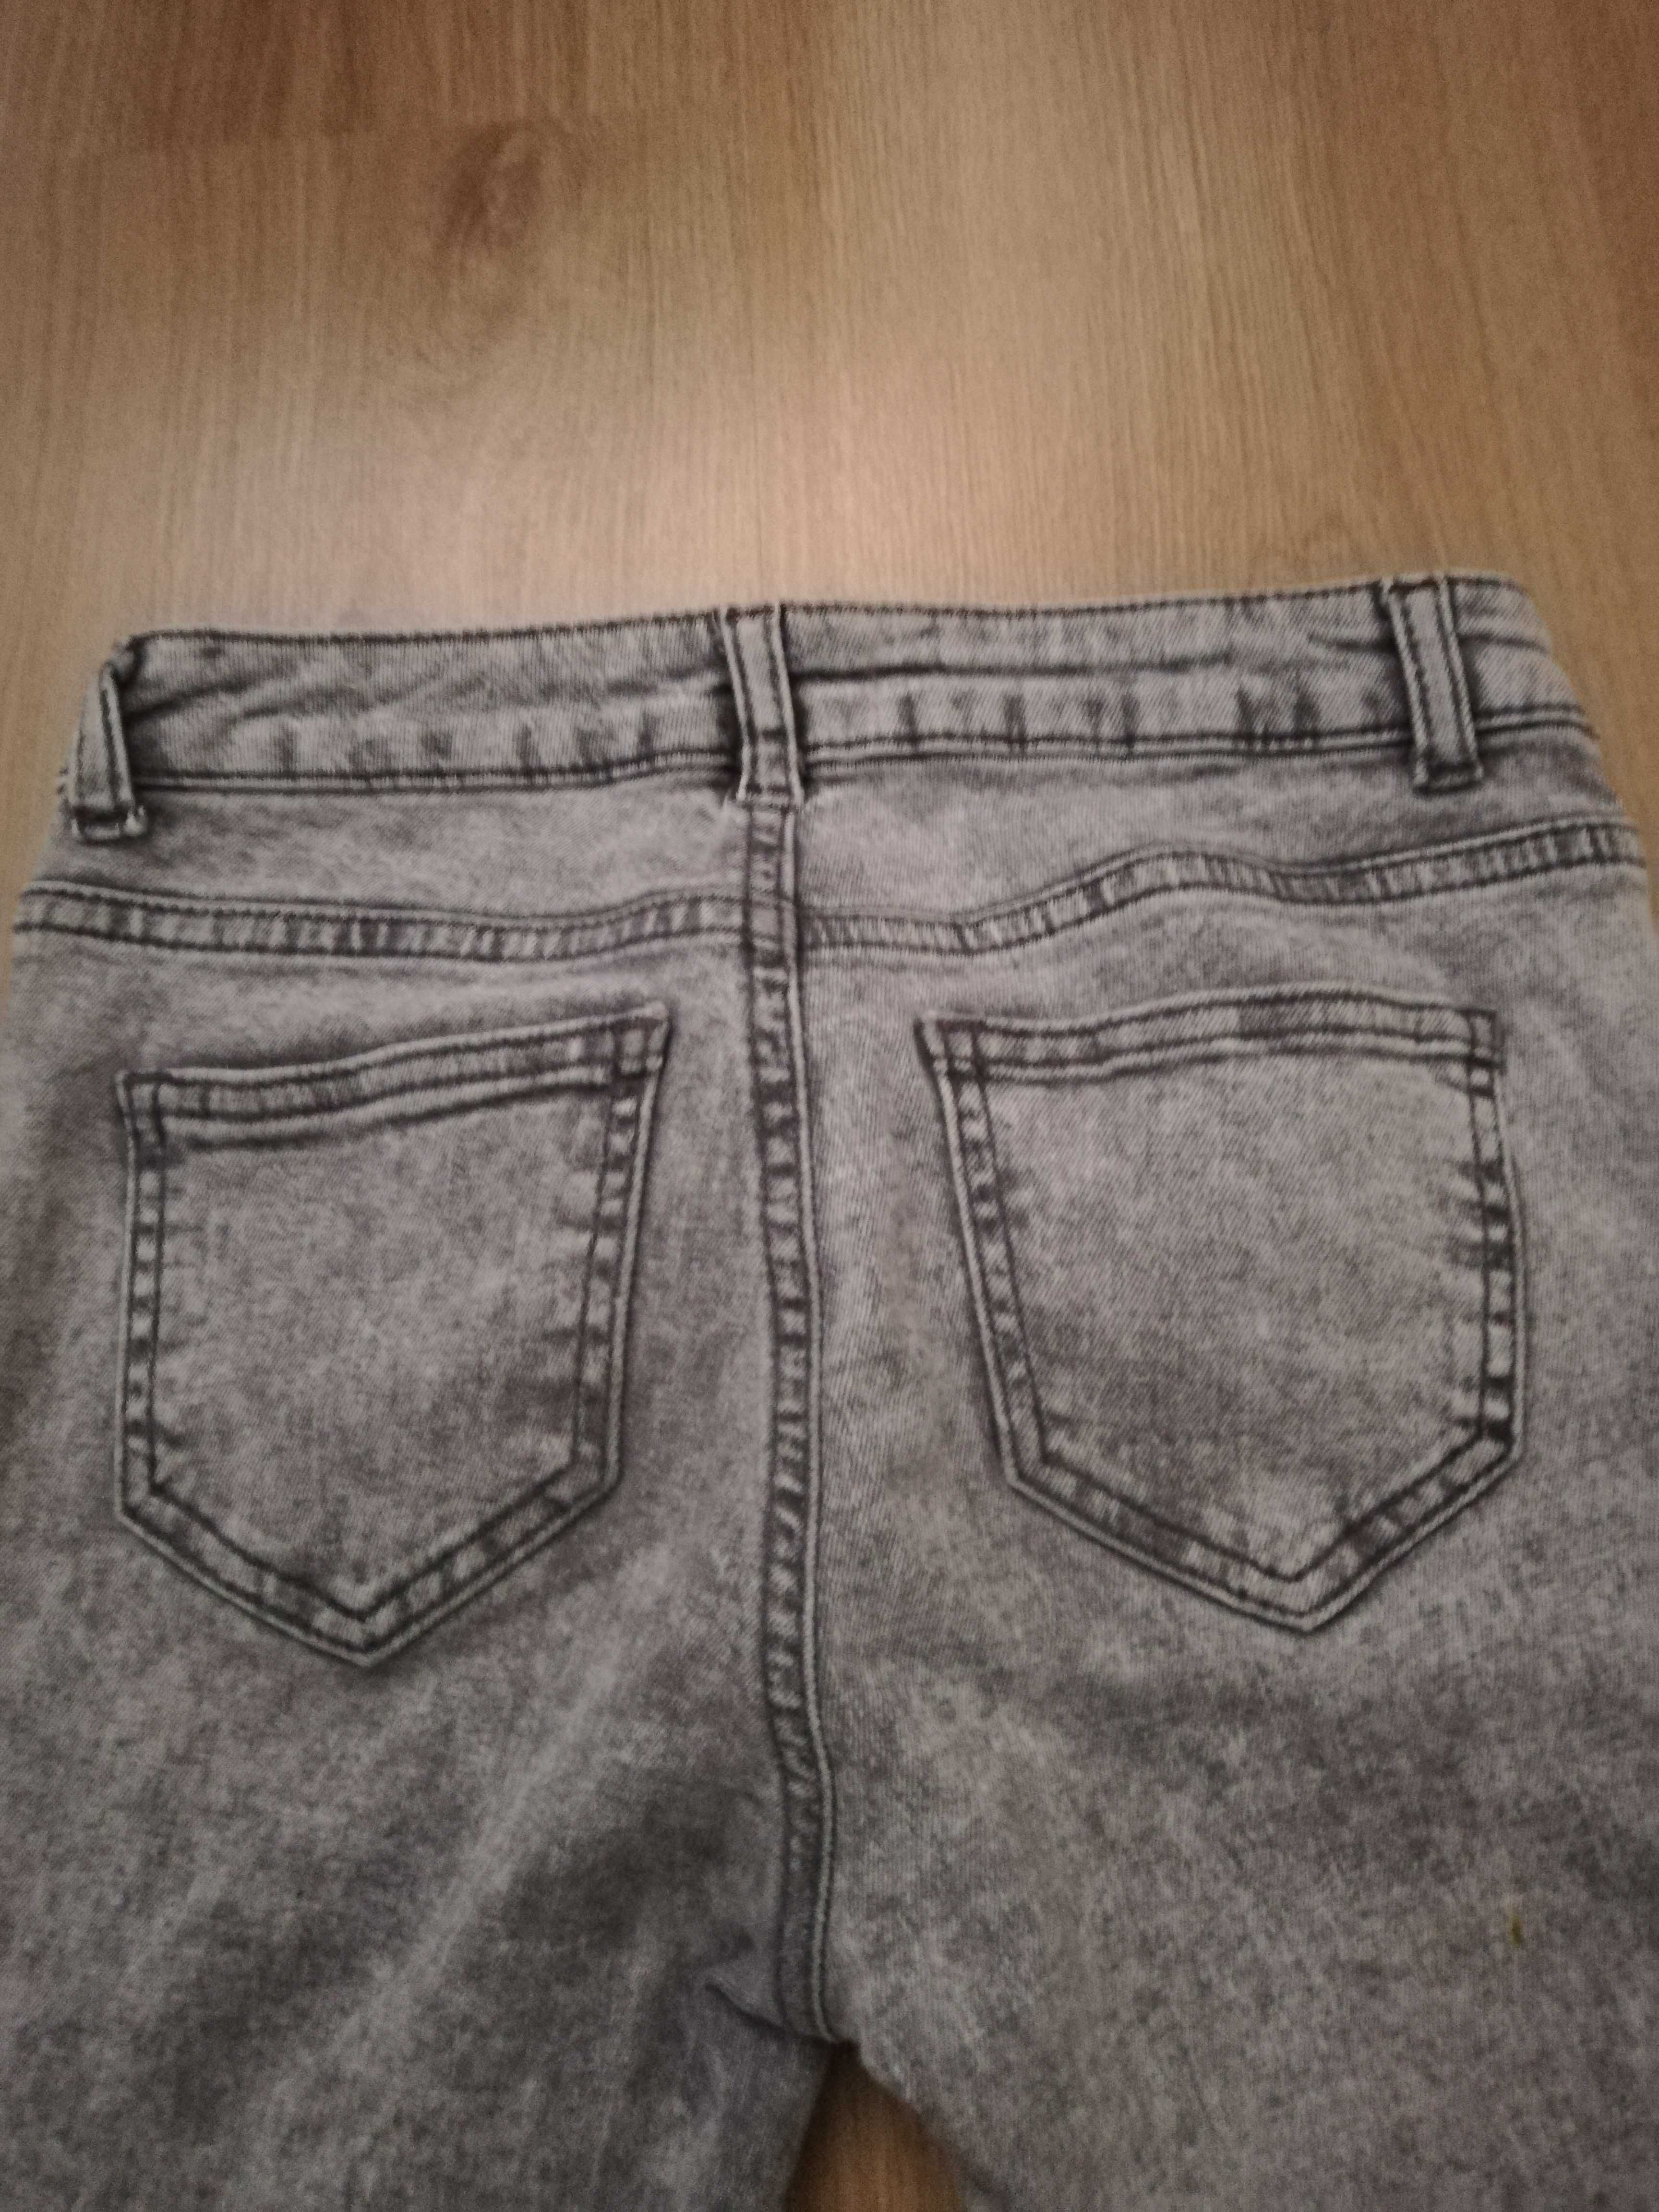 Spodnie jeansy rurki xs szare zamki